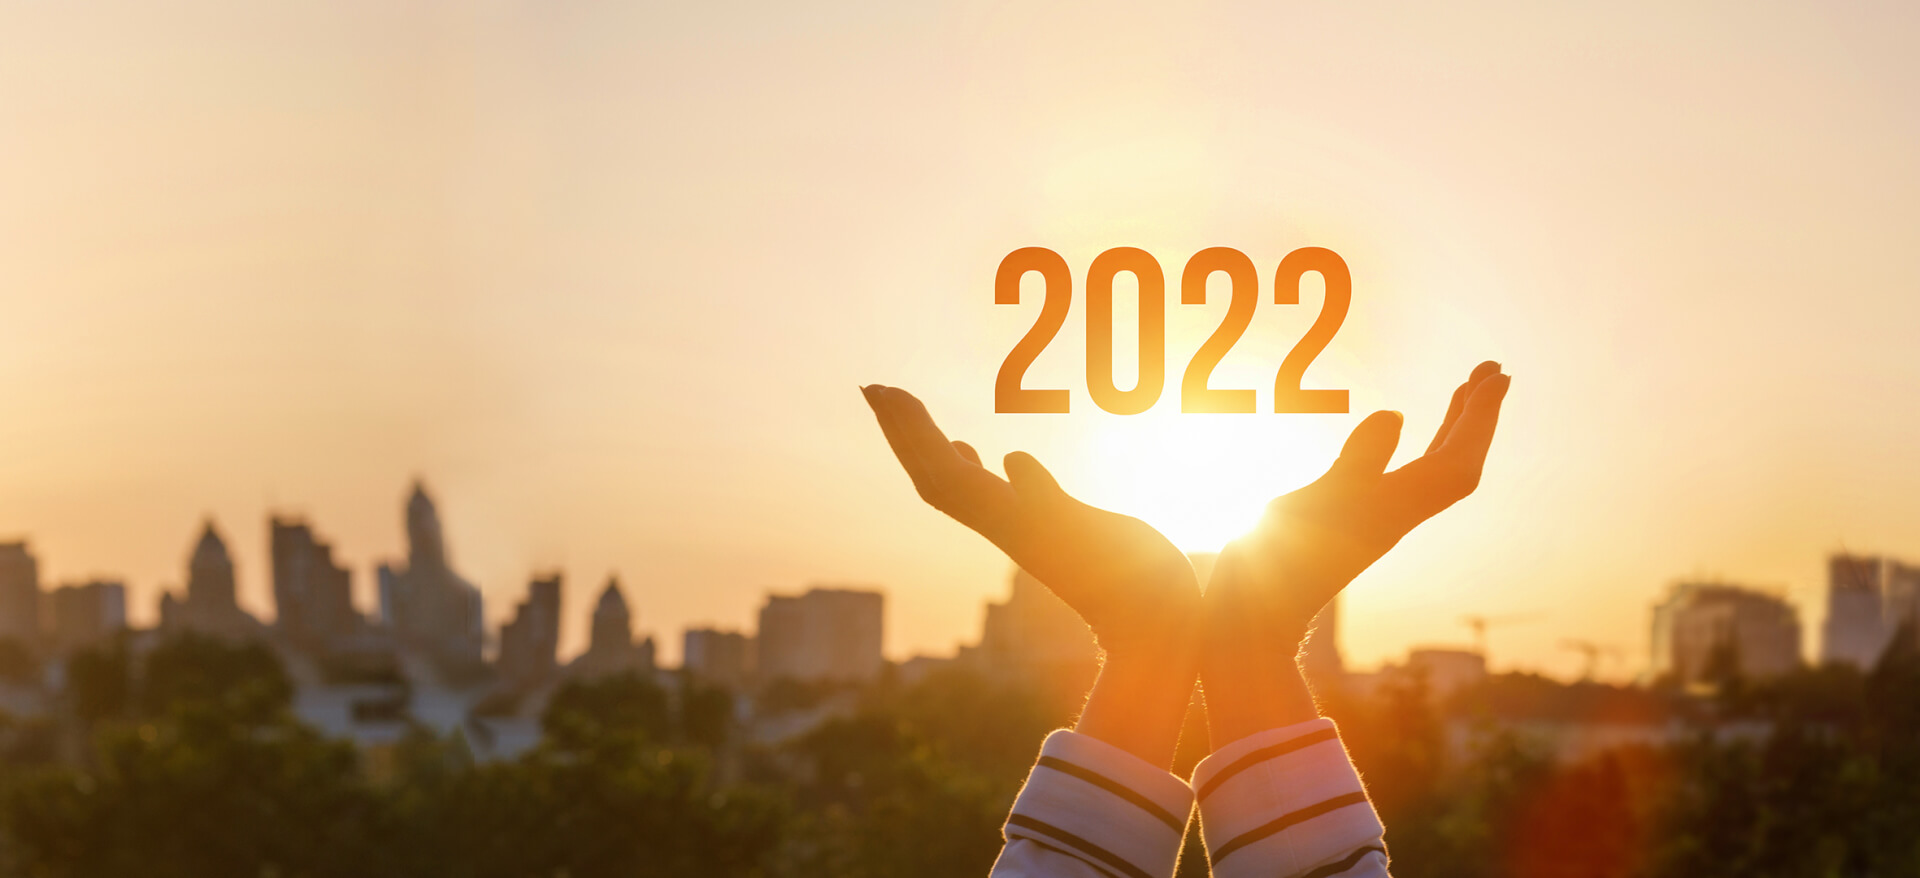 Geste offene Hände mit 2022 darüber vor einem Sonnenuntergang